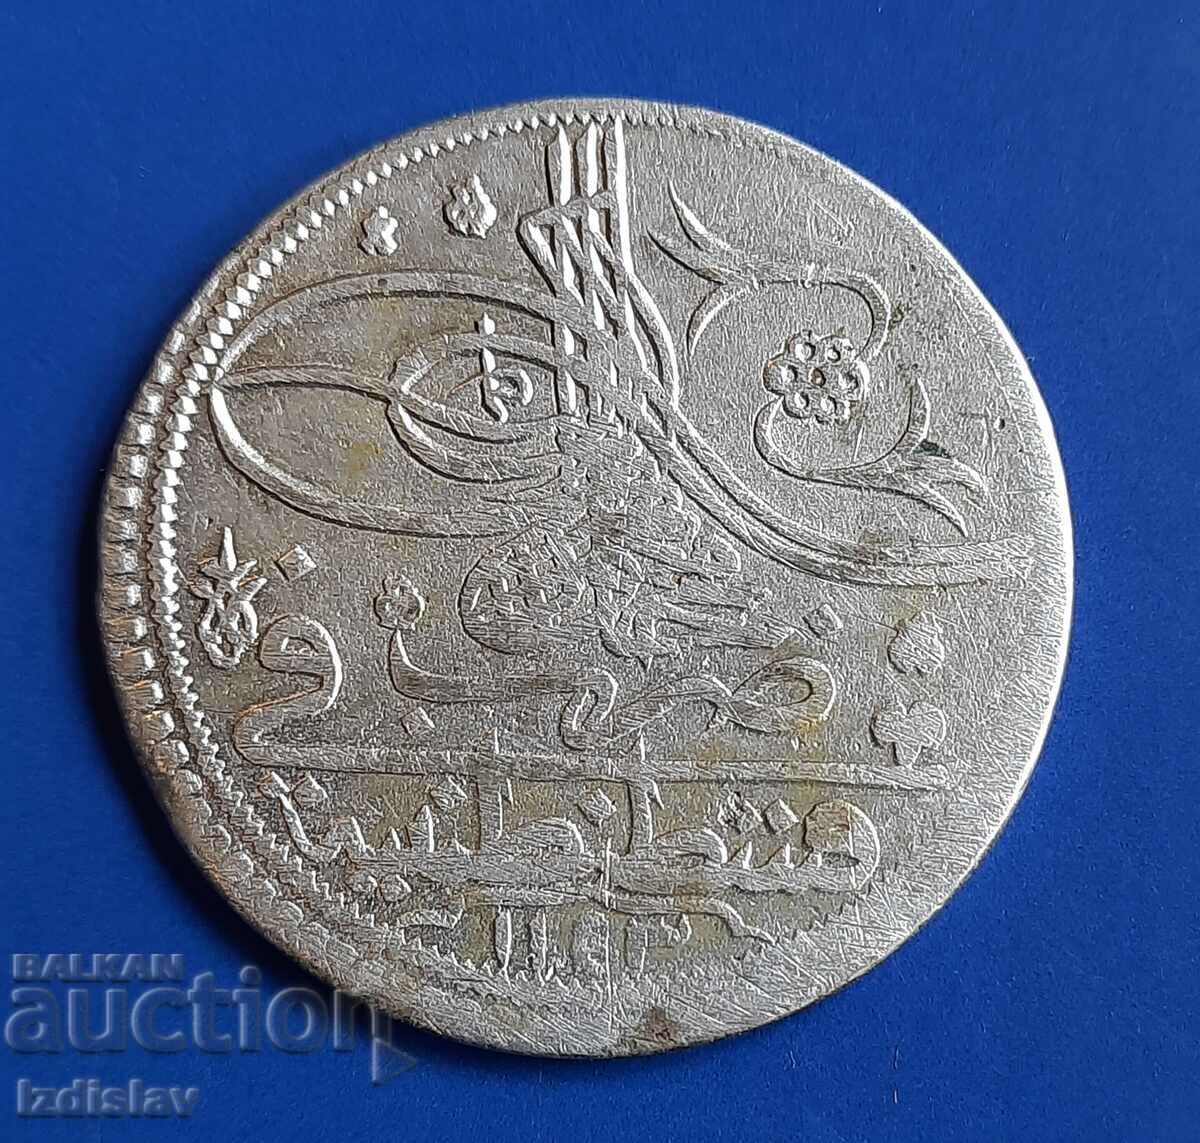 Monedă mare otomană de argint veche.